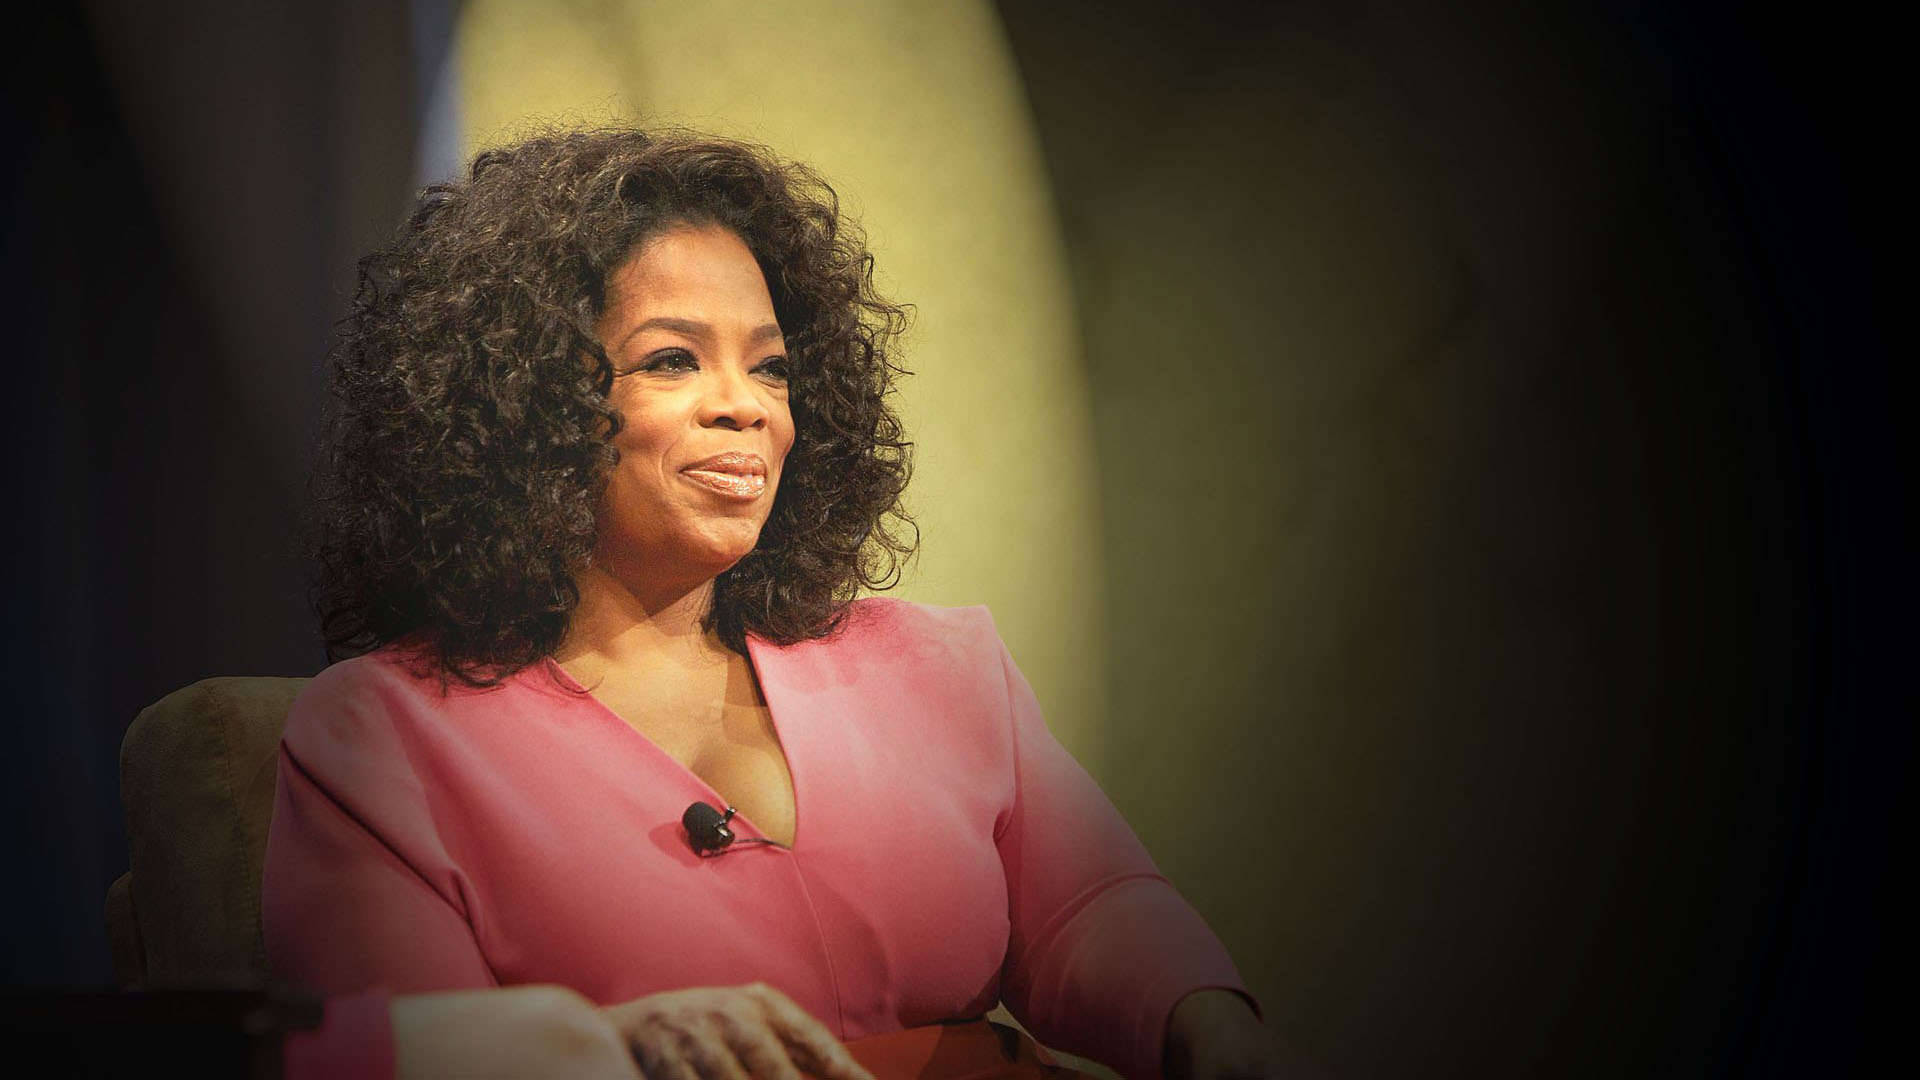 Vignette Portrait Oprah Winfrey Background